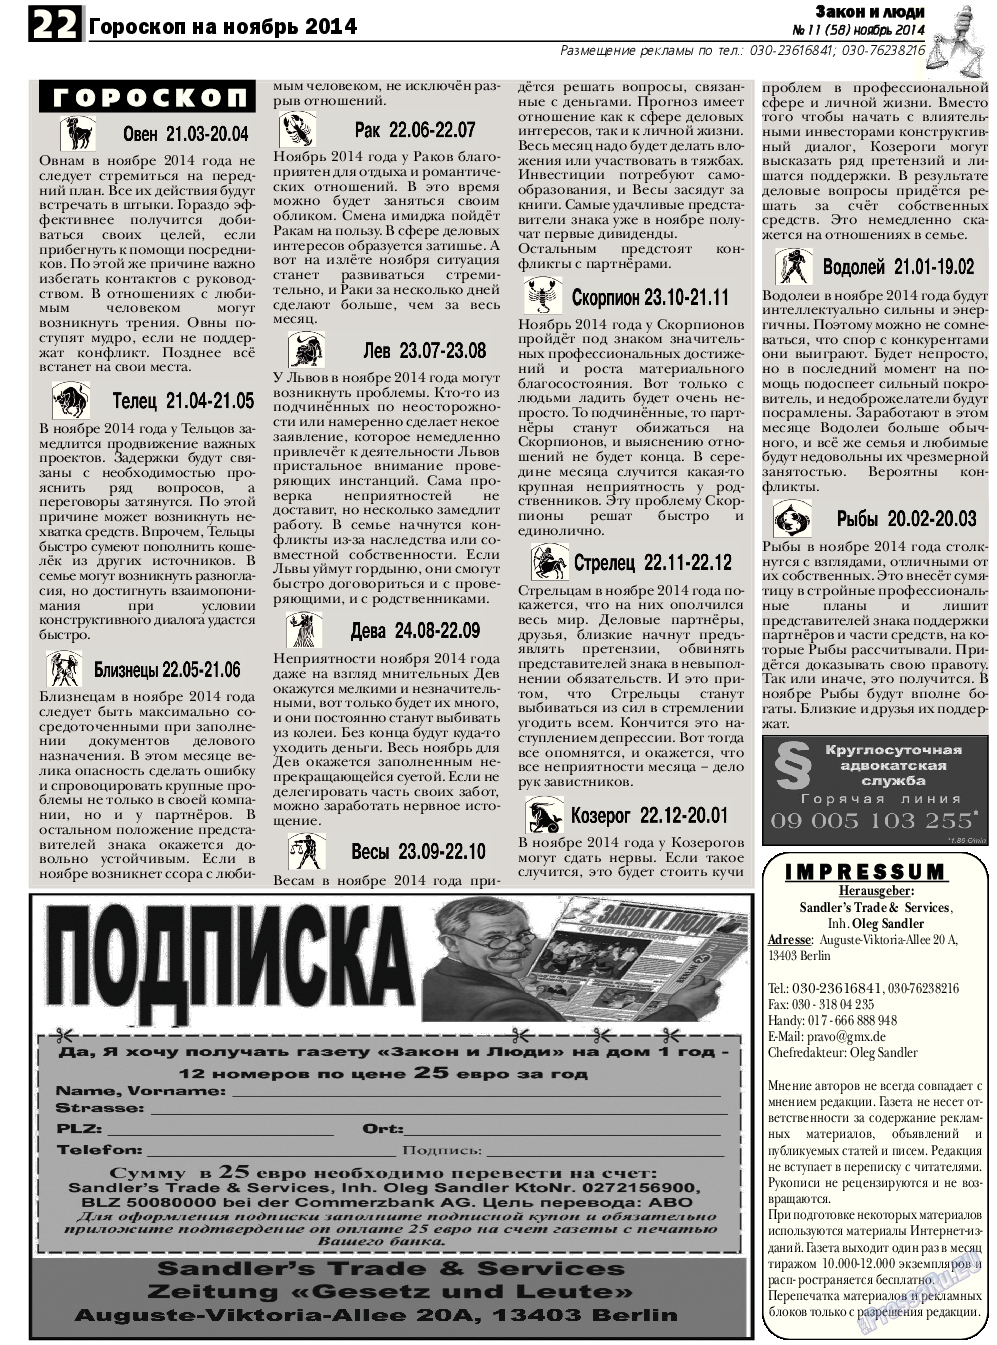 Закон и люди, газета. 2014 №11 стр.22